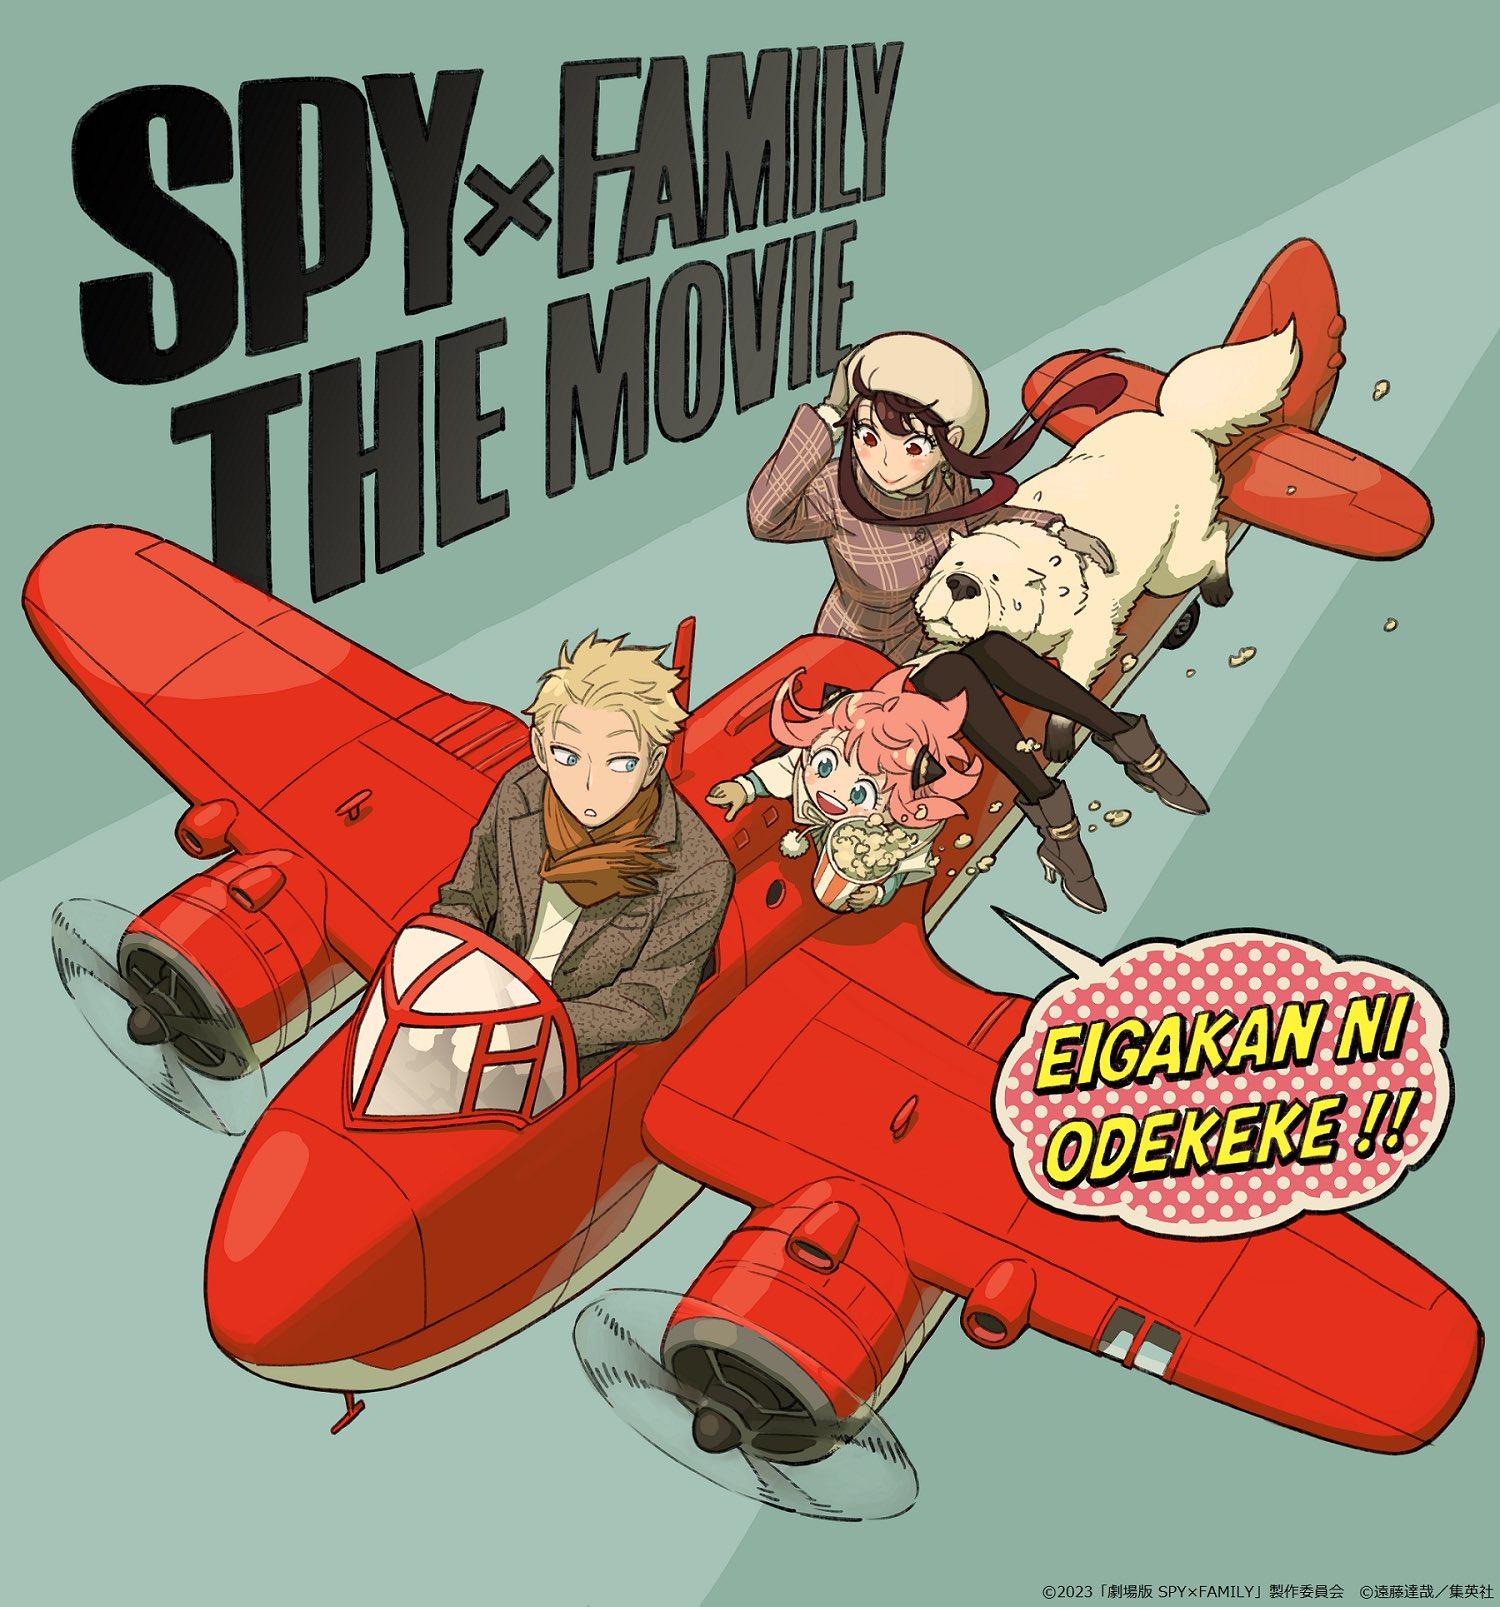 Spy x Family - Wit Studio (2022)